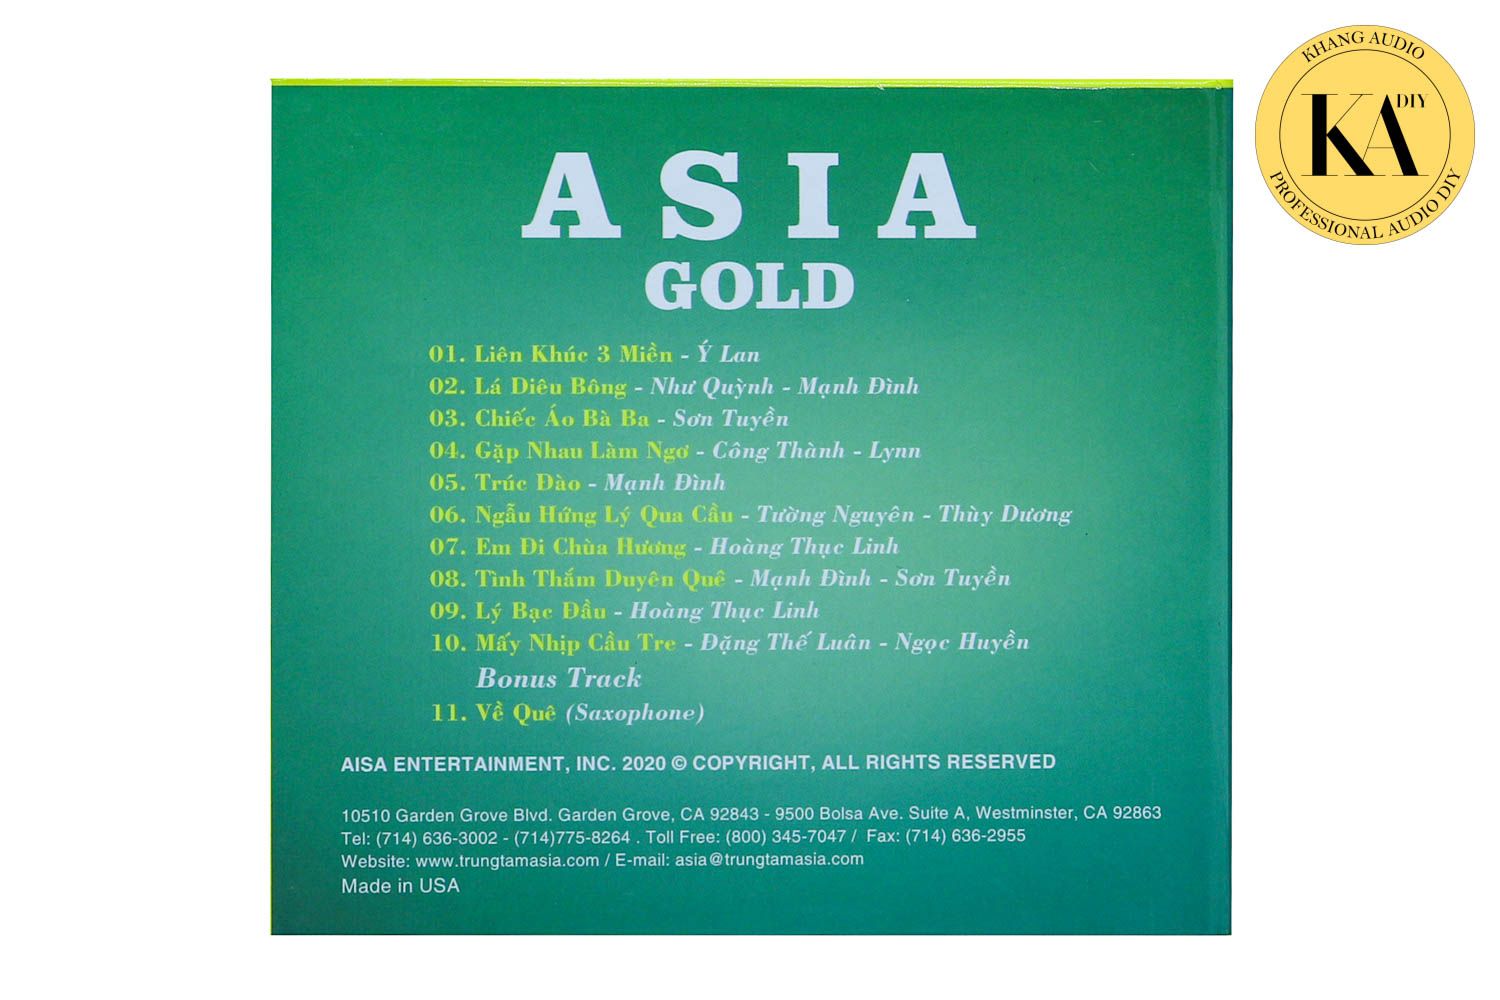 Nhạc Vàng Tuyển Chọn - ASIA GOLD Vol.4